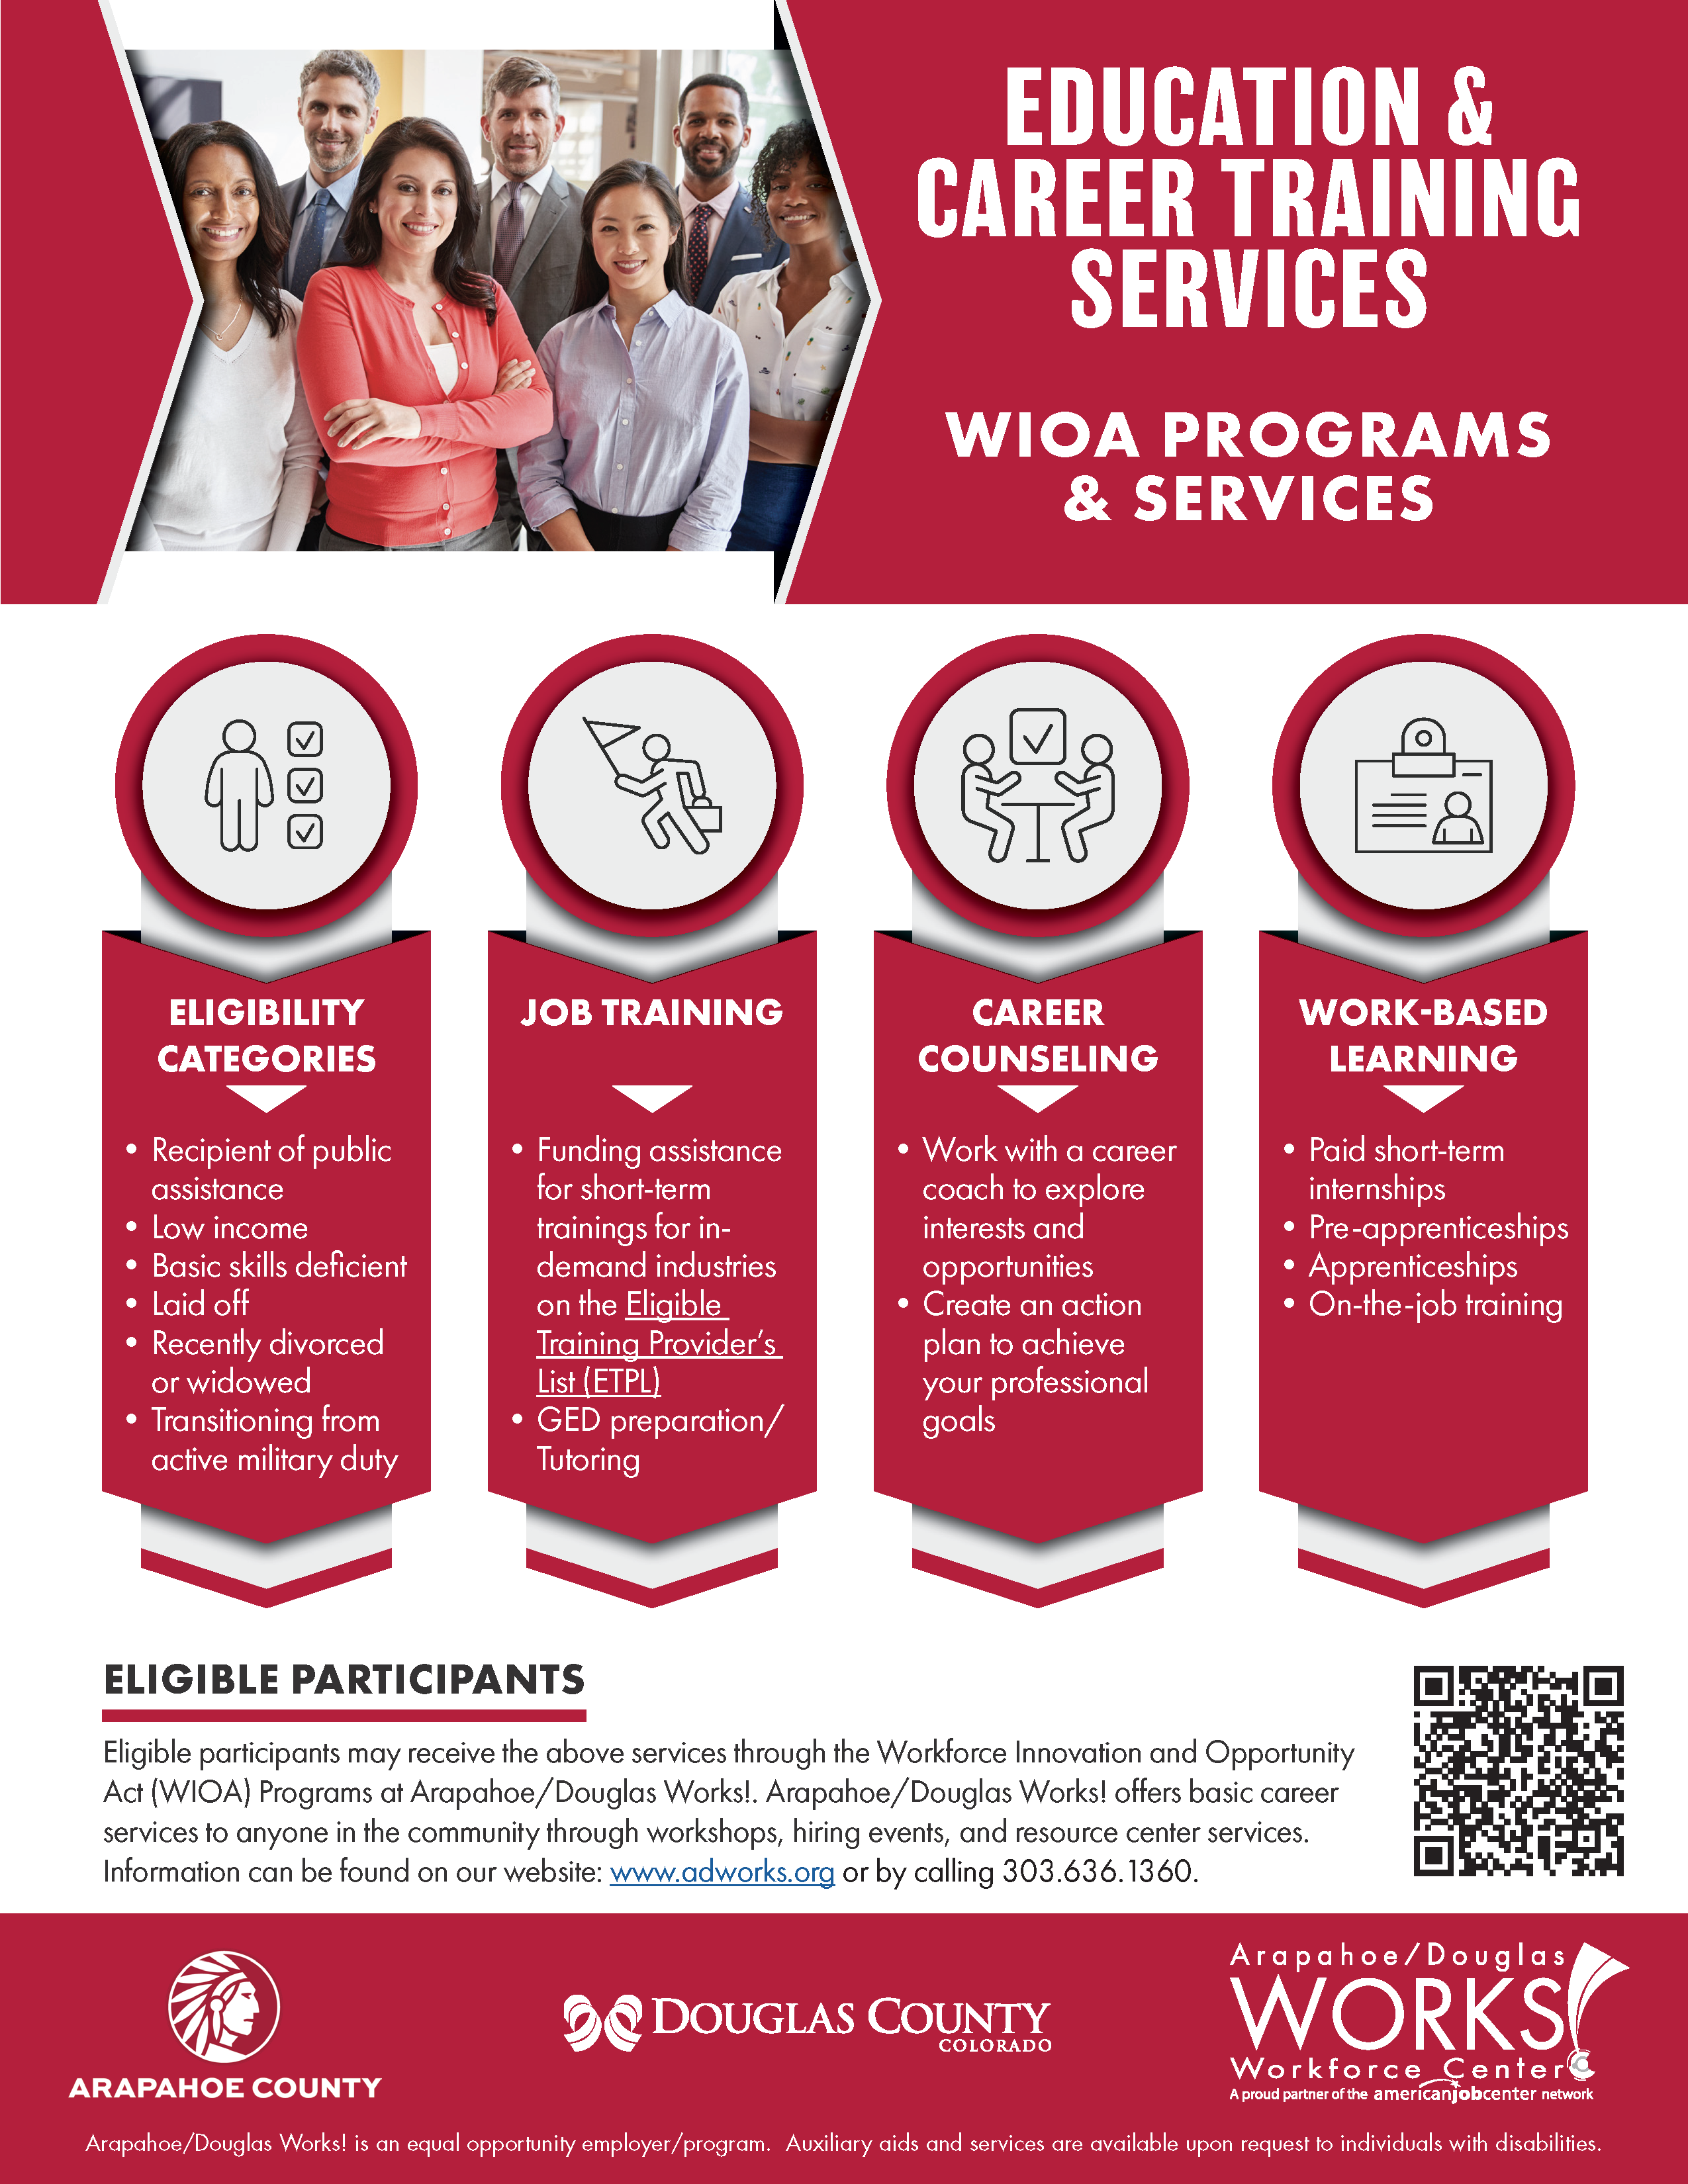 WIOA Programs & Services